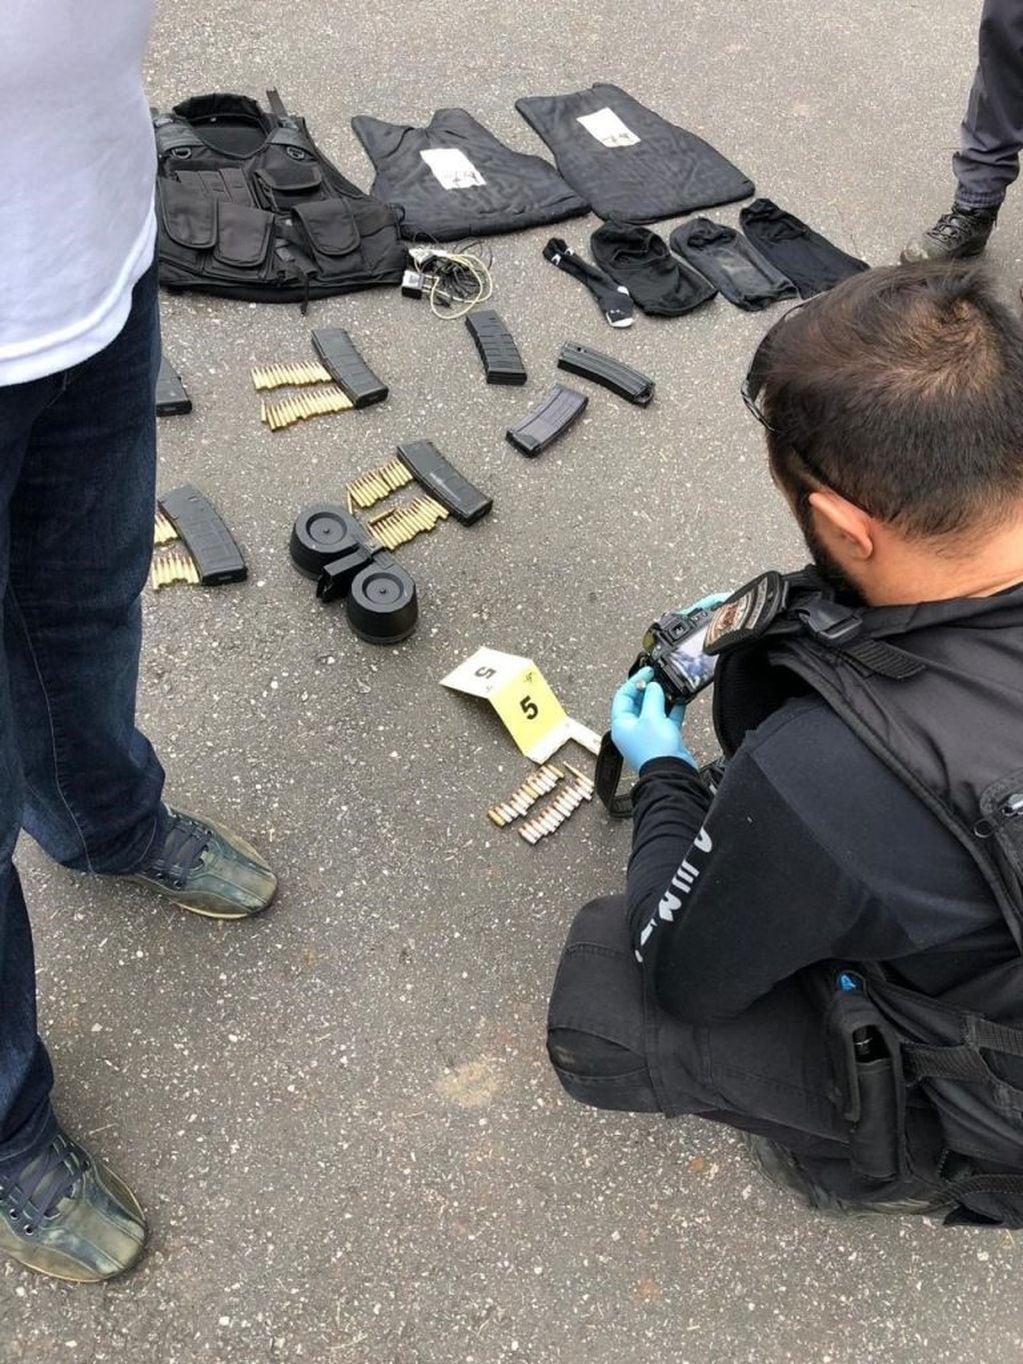 Las armas incautadas por la Policía tras el intento de asalto a las sucursales del Banco do Brasil y el Santander Brasil, en la ciudad de Guararema, en la región metropolitana de Sao Paulo, (Brasil). EFE/Secretaria de Seguridad Publica